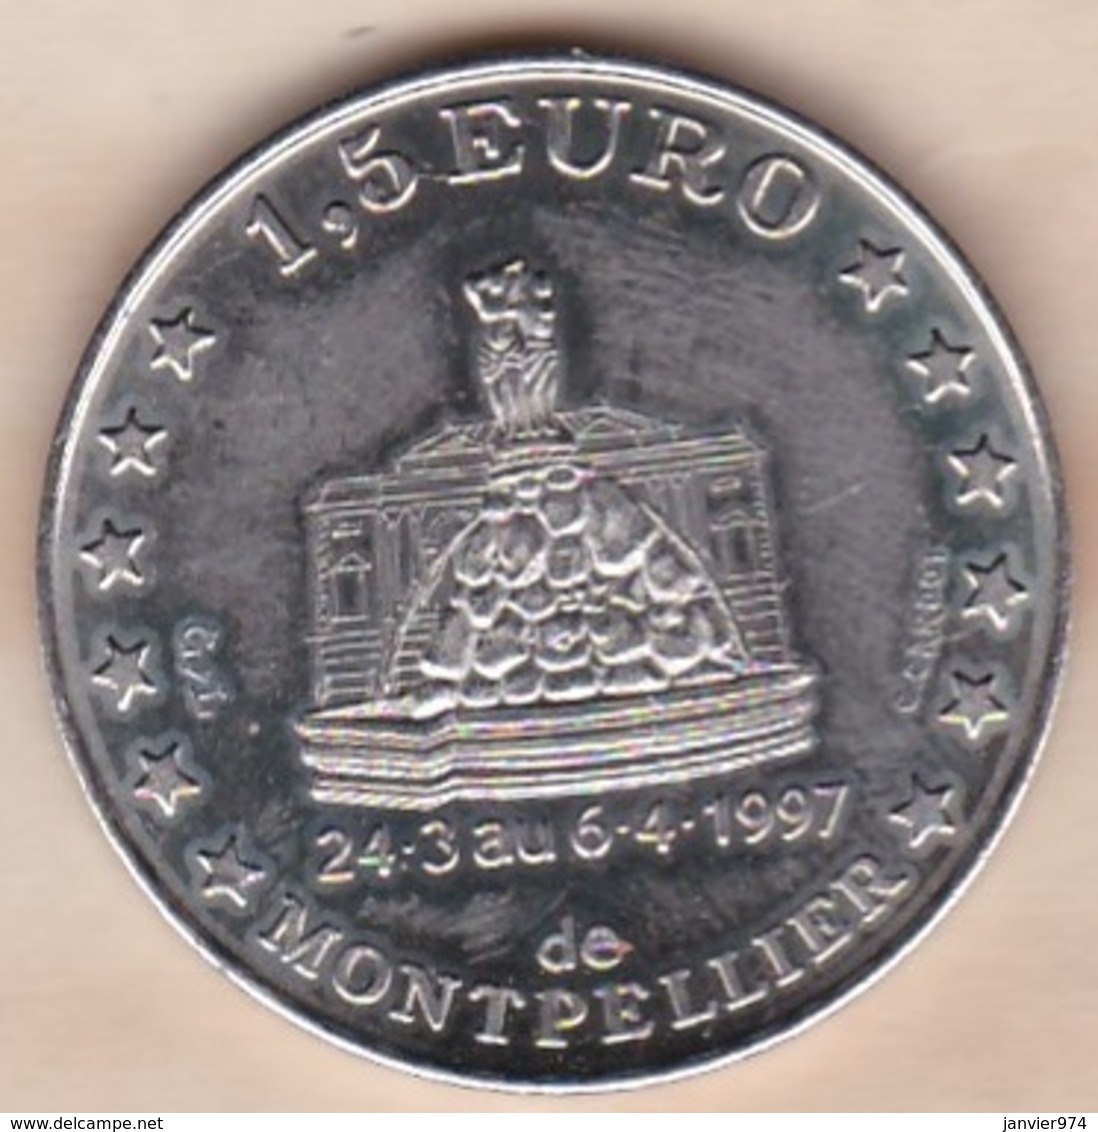 1,5 Euro De Montpellier 1997 Centenaire De Sup De Co - Euros Des Villes